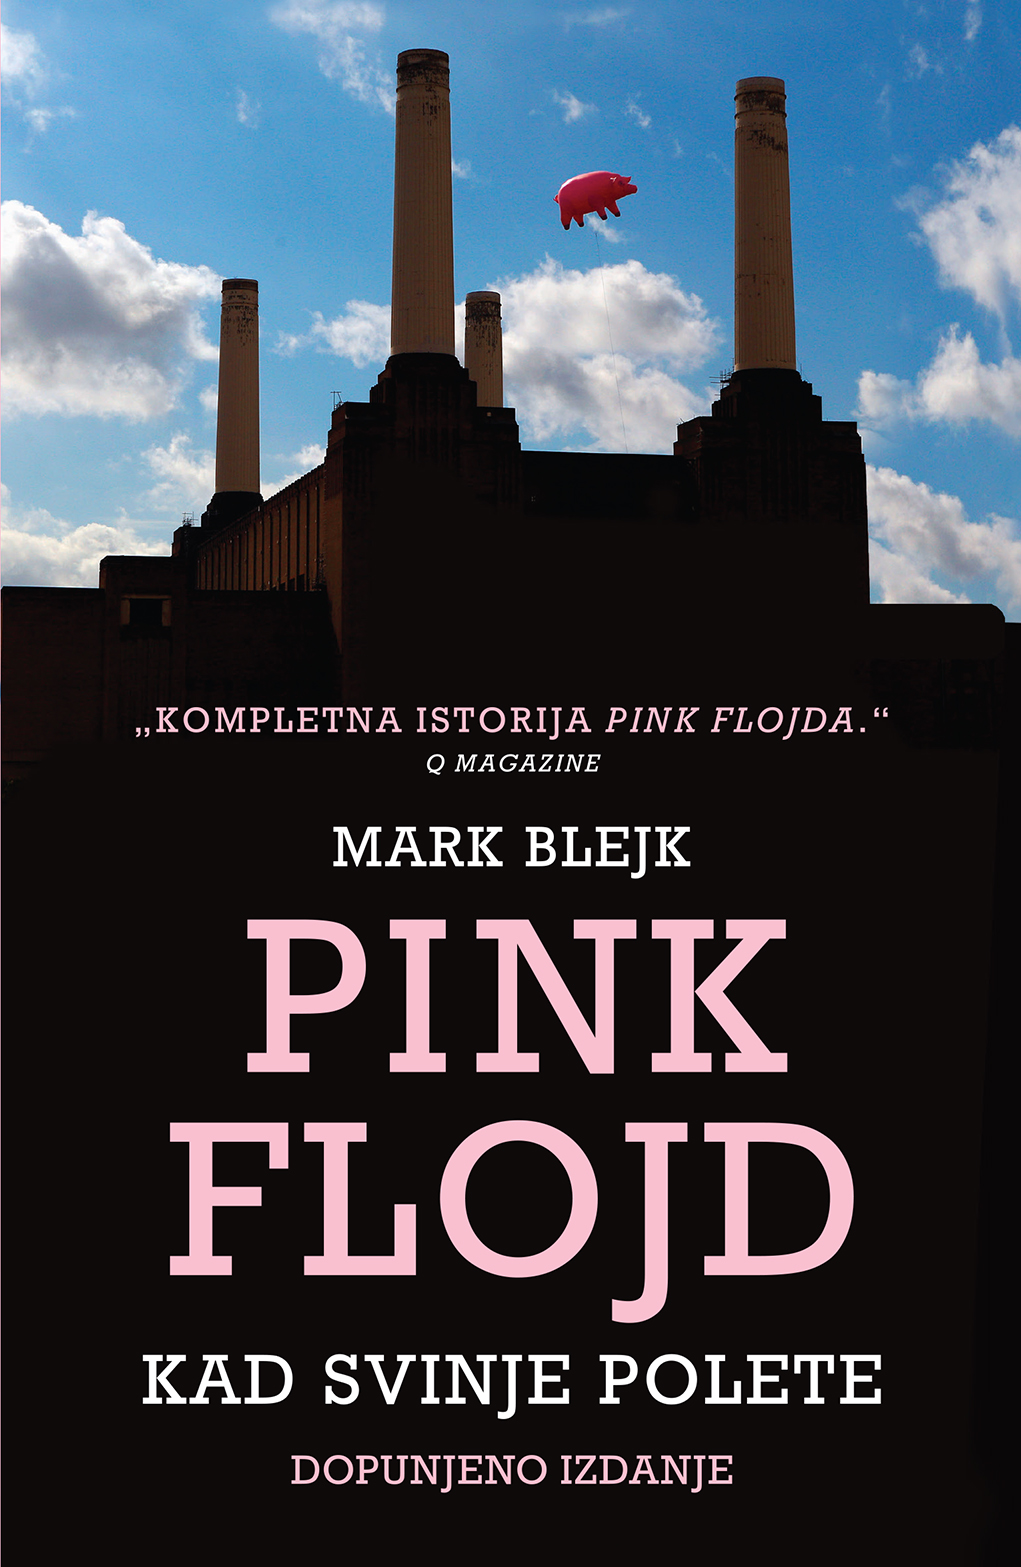 Pink Flojd – Kad svinje polete